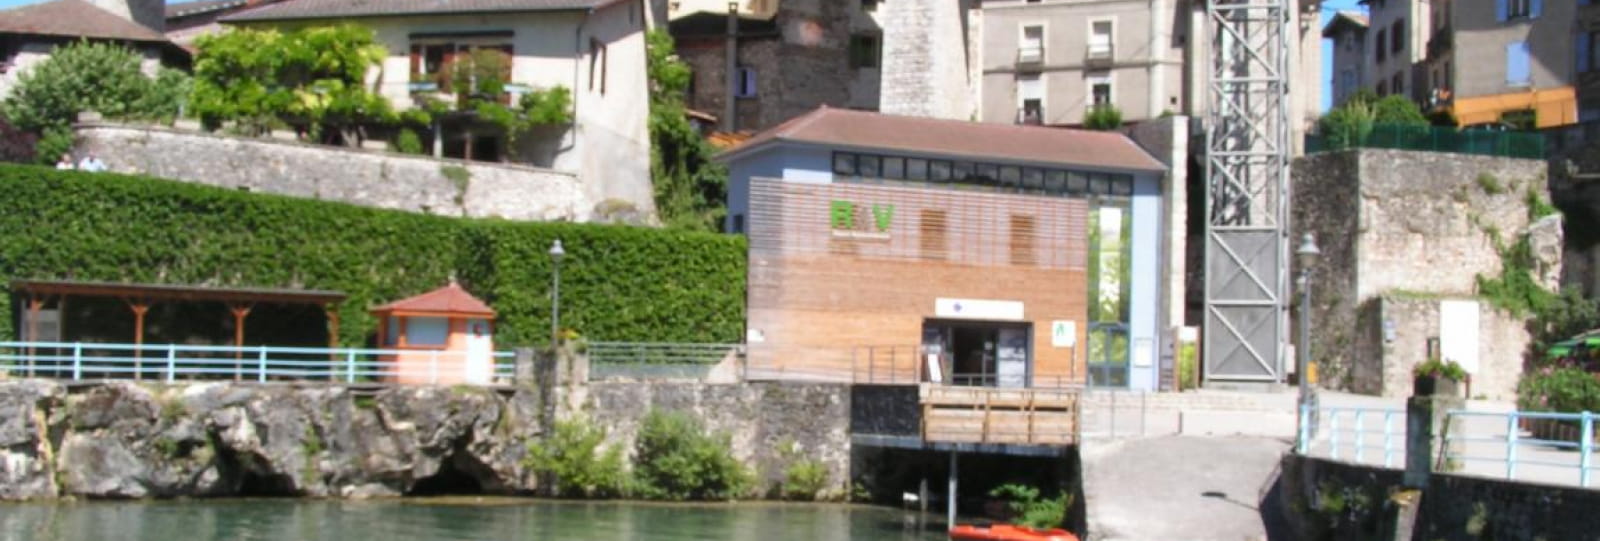 Office de Tourisme Vercors Drôme - Bureau d’Information Touristique Saint Nazaire en Royans